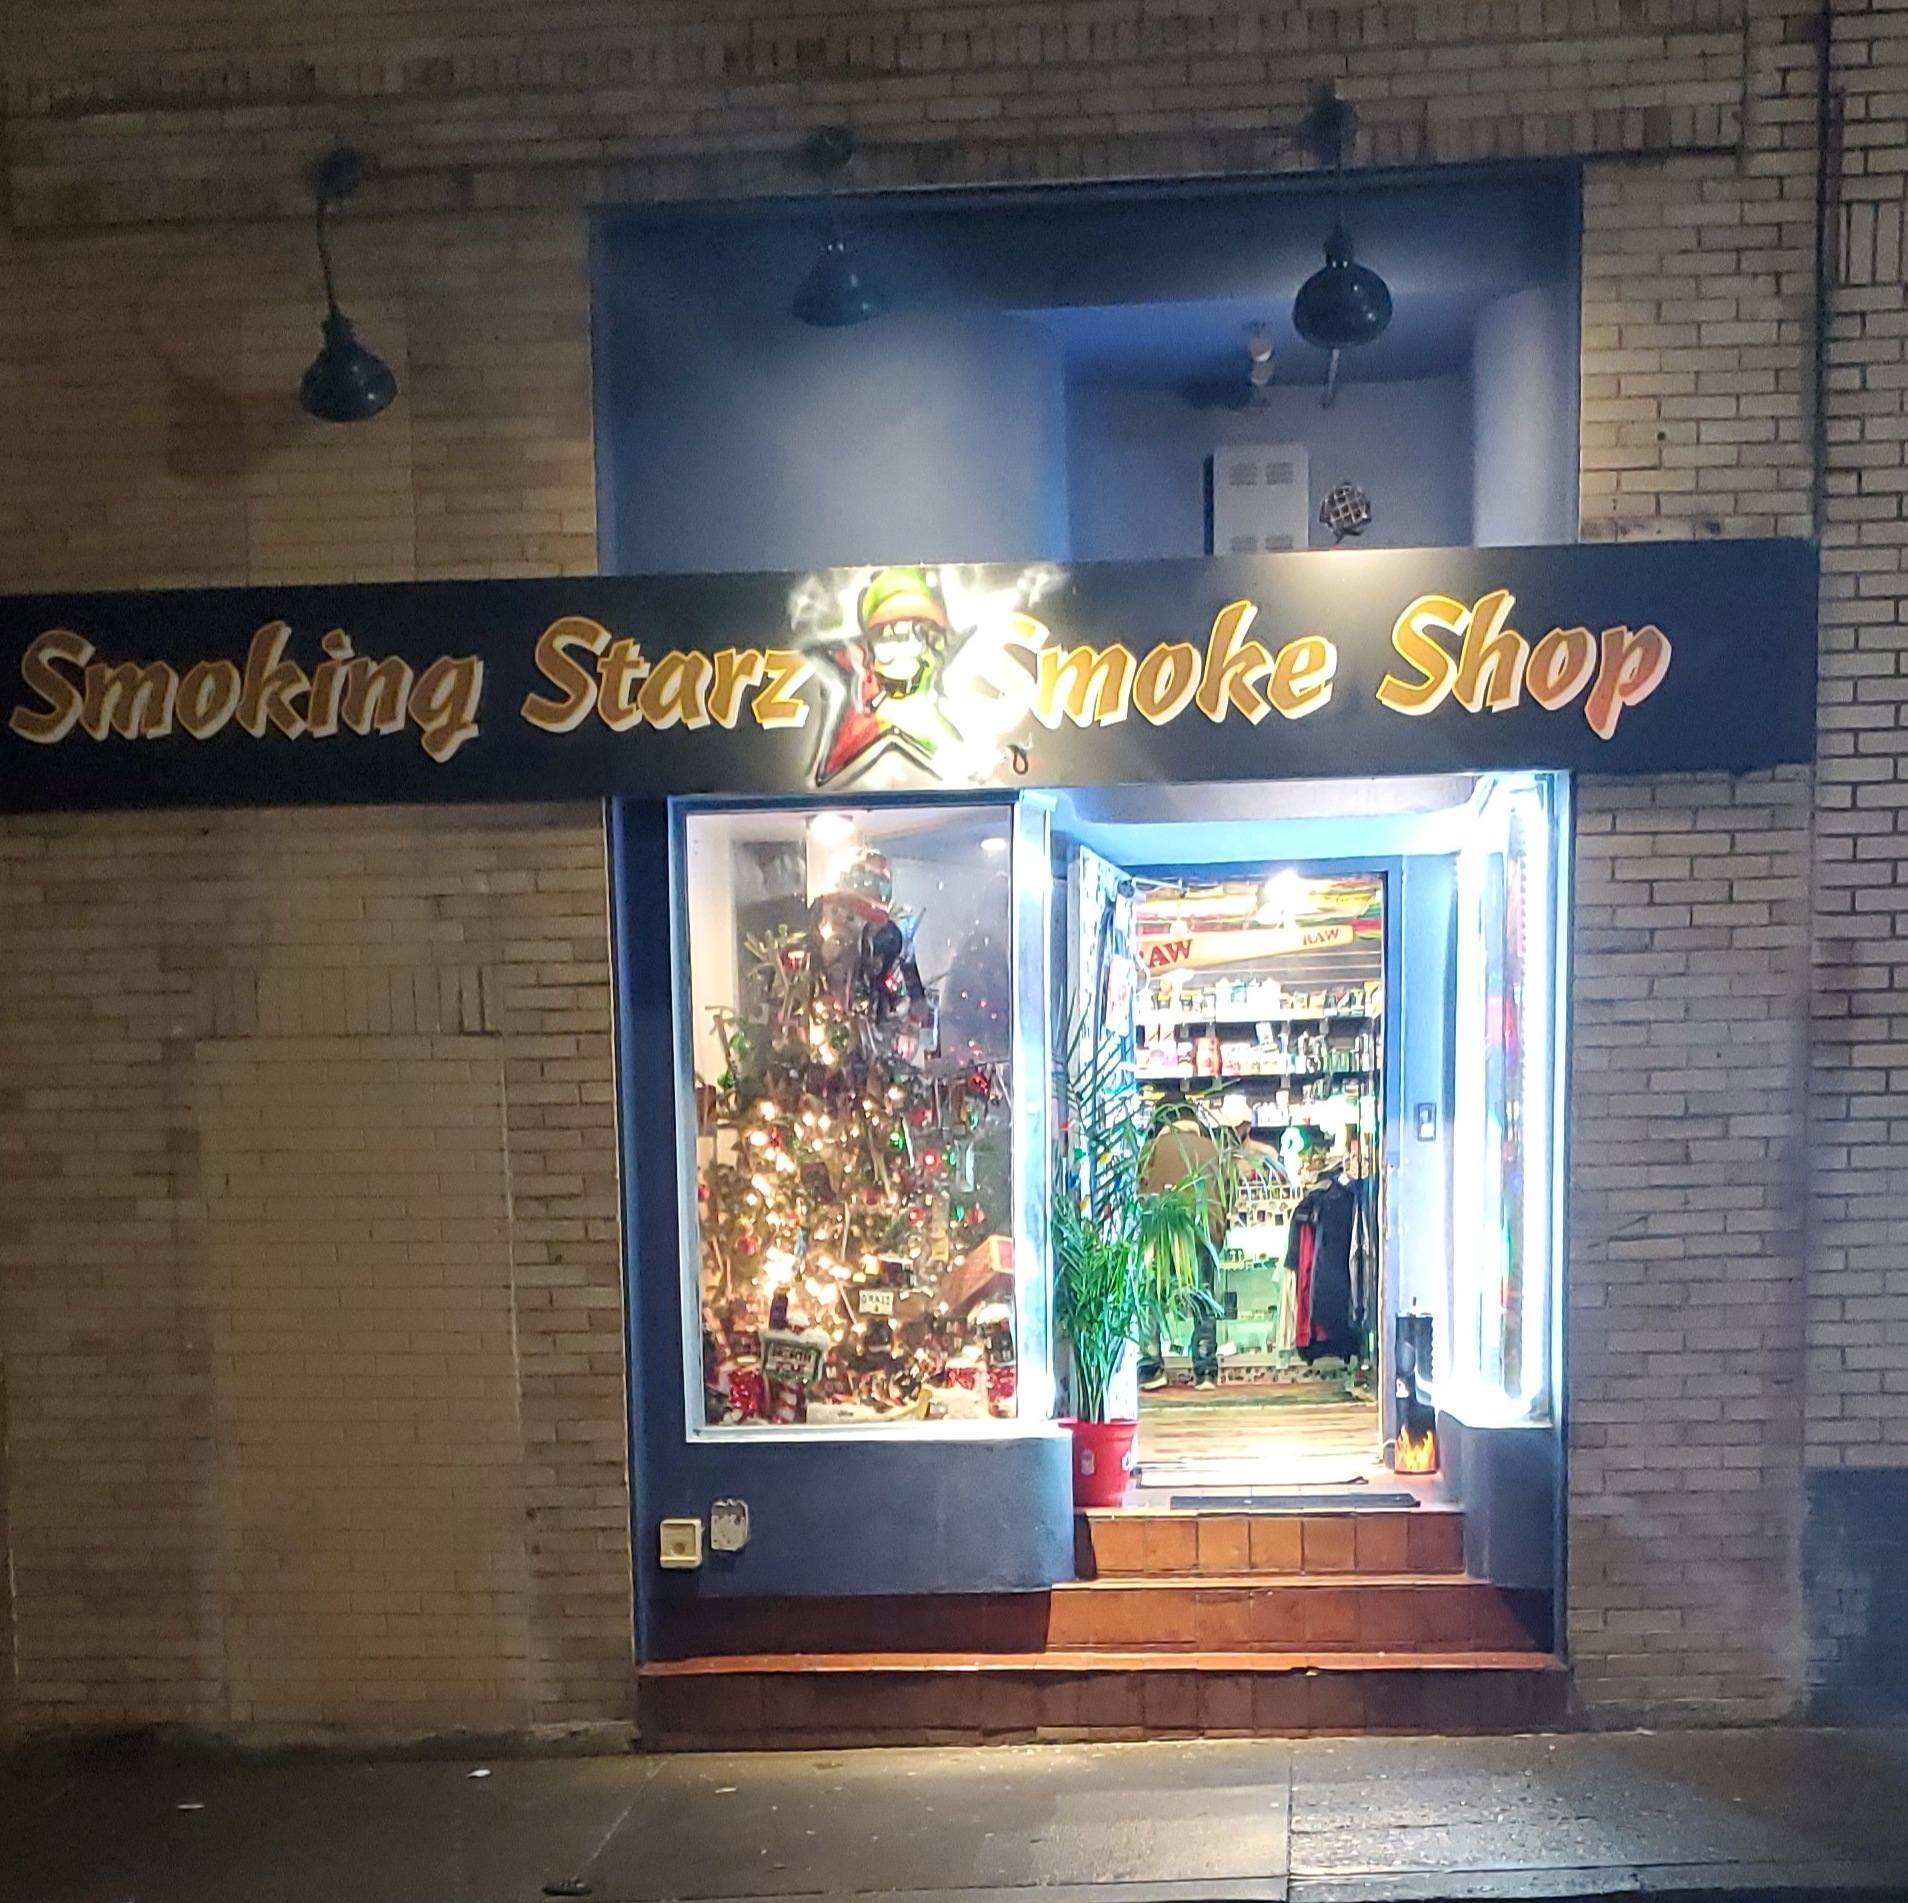 Smoking Starz Smoke Shop